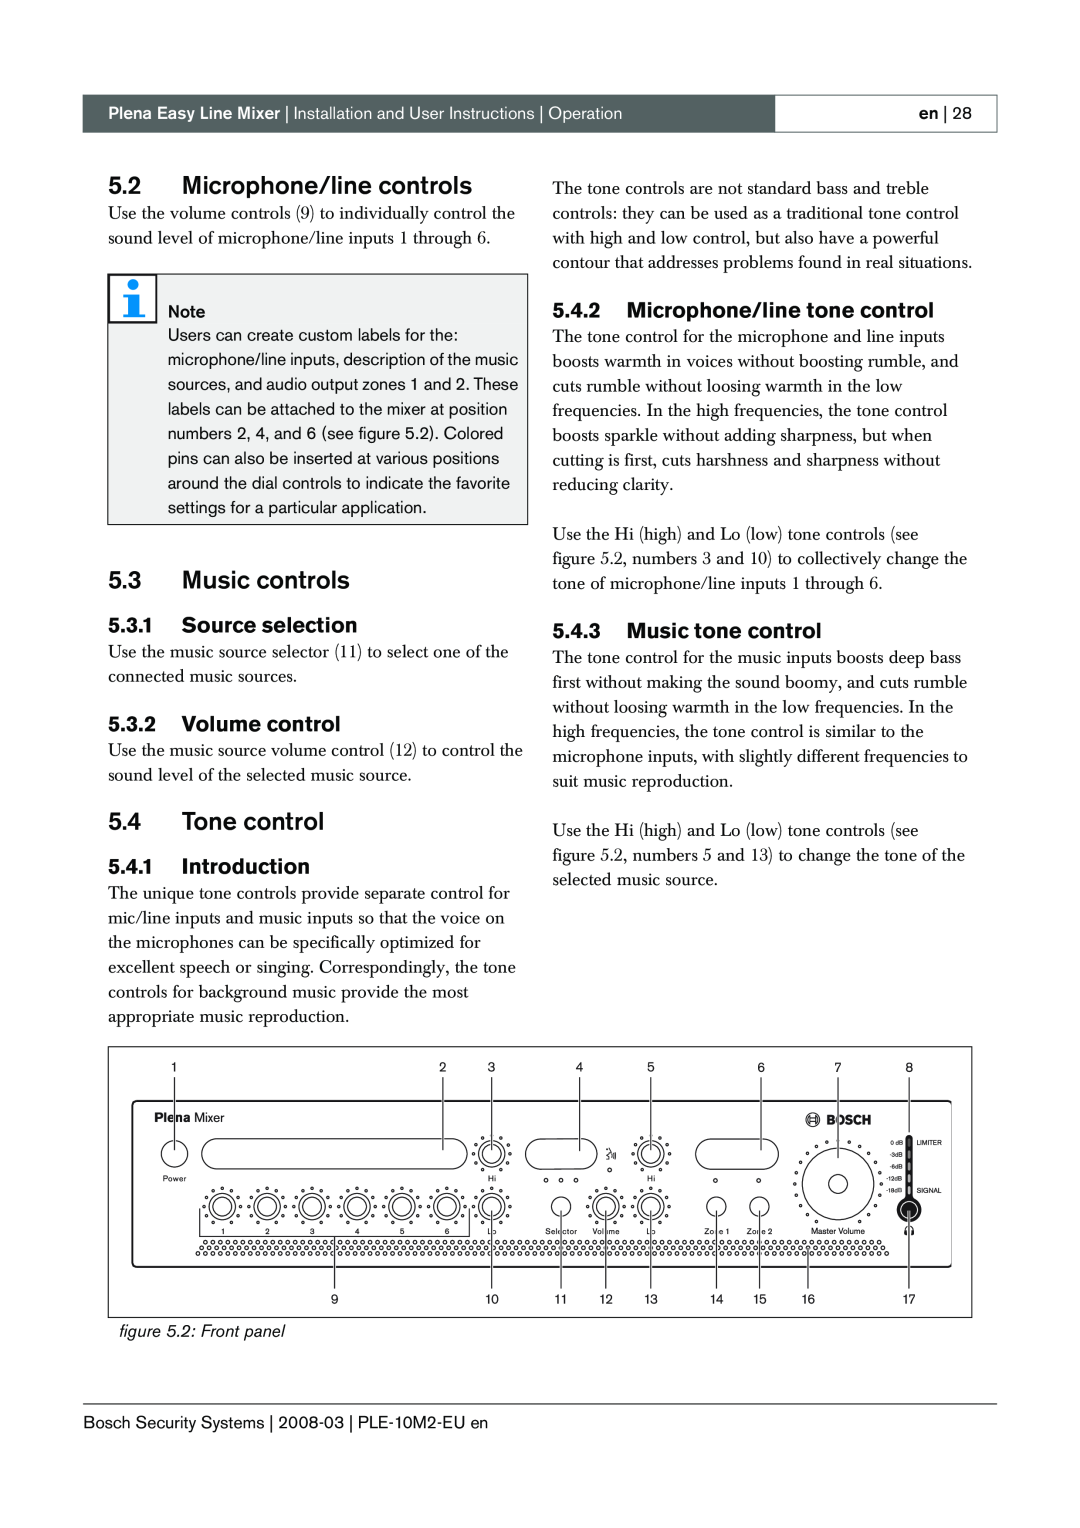 Bosch Appliances PLE-10M2-EU manual 5.2Microphone/line controls, 5.3Music controls, 5.4Tone control, 5.3.1Source selection 